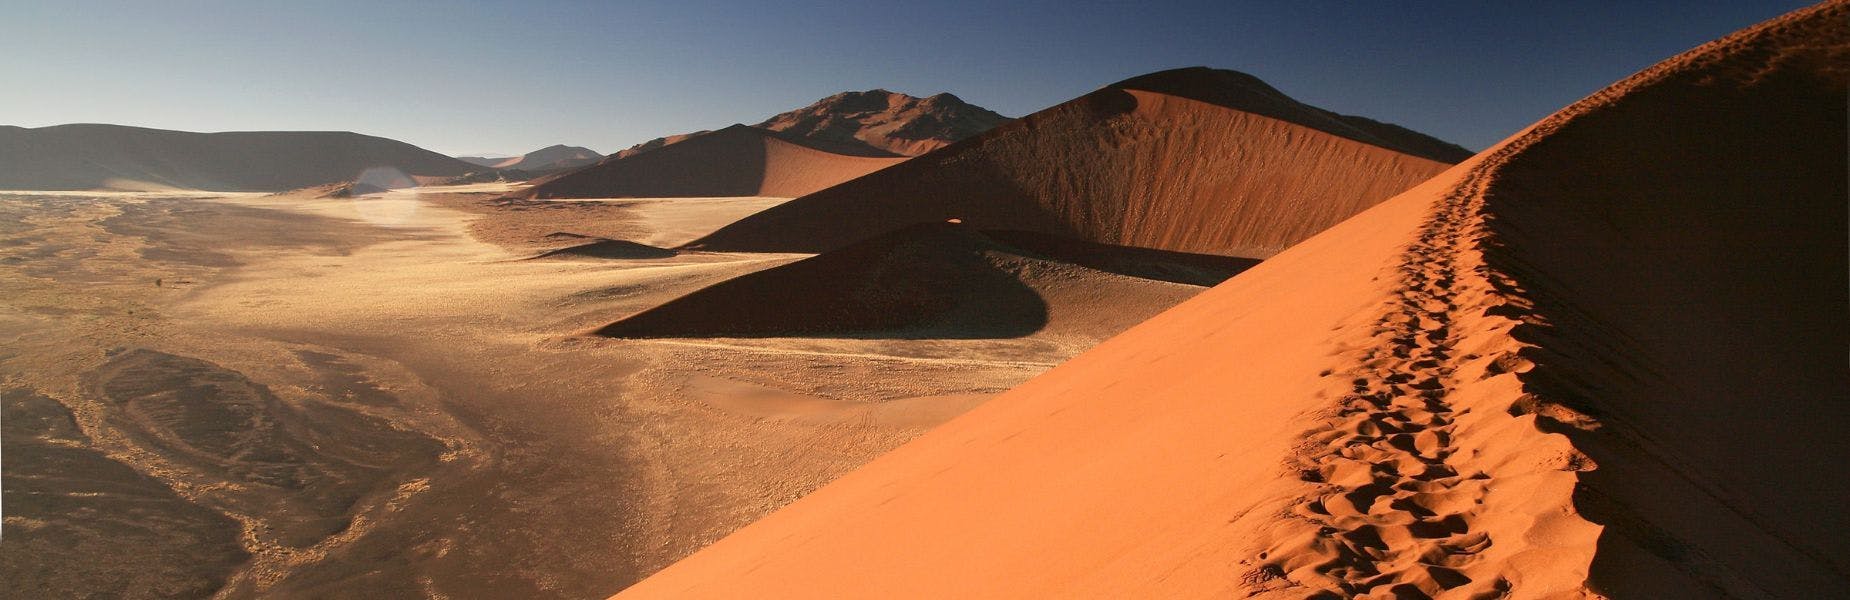 De duinen van Namibië